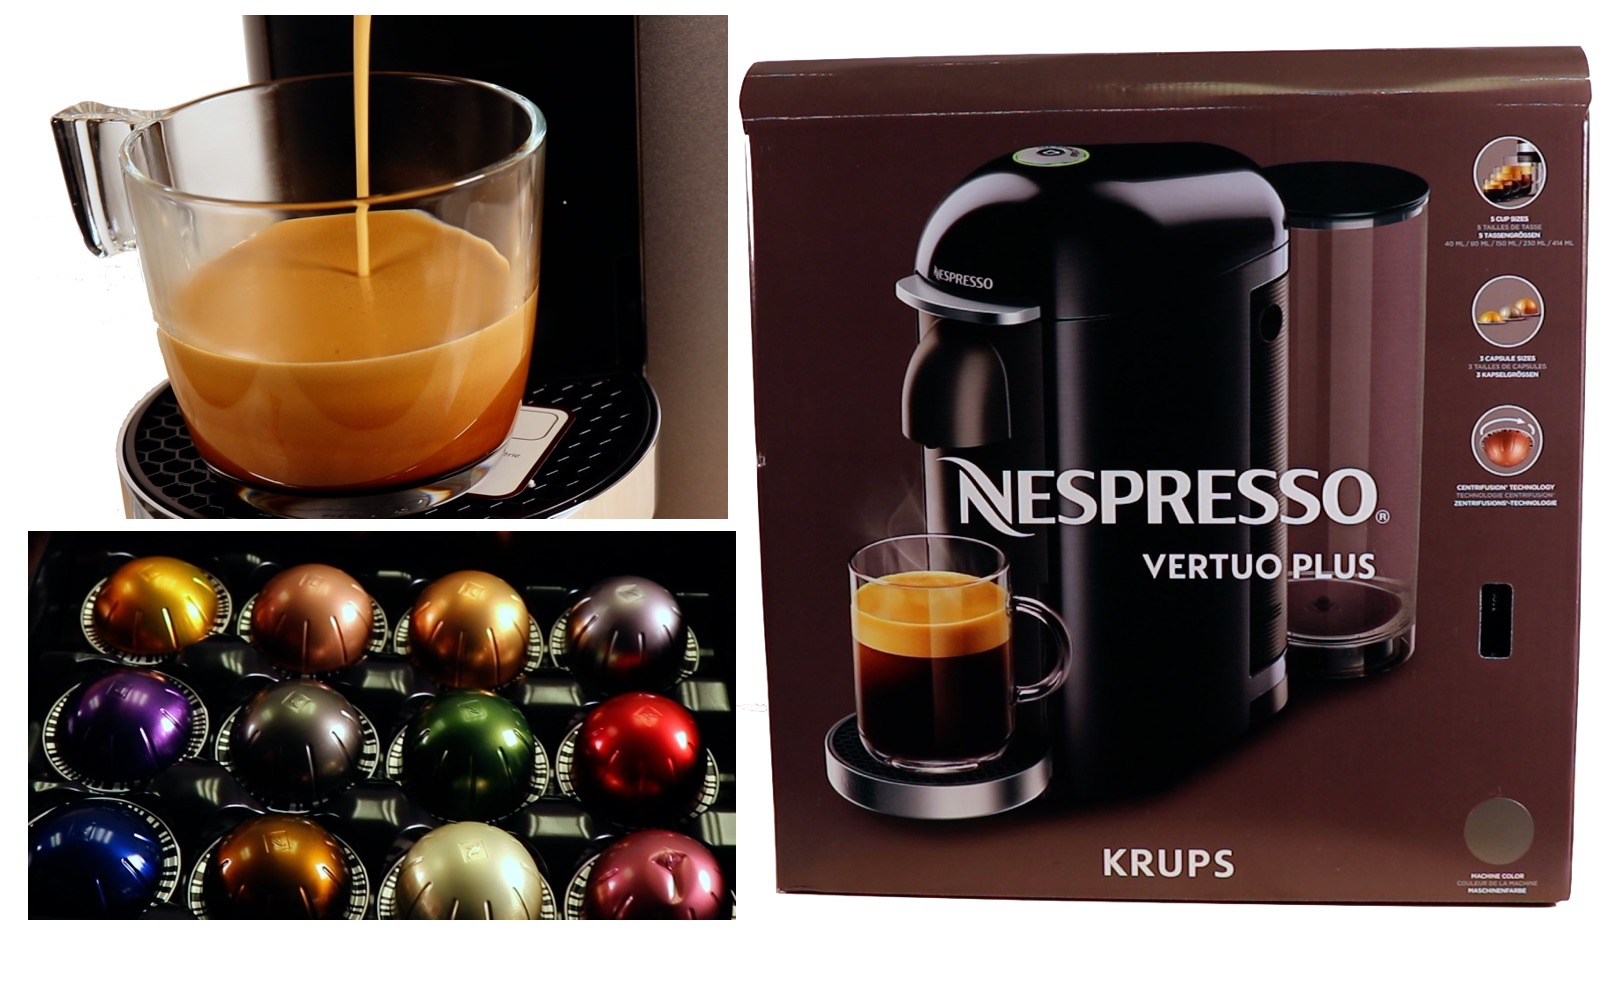 Krups Nespresso Vertuo Plus im Test – ausgezeichneter Kaffee per Knopfdruck